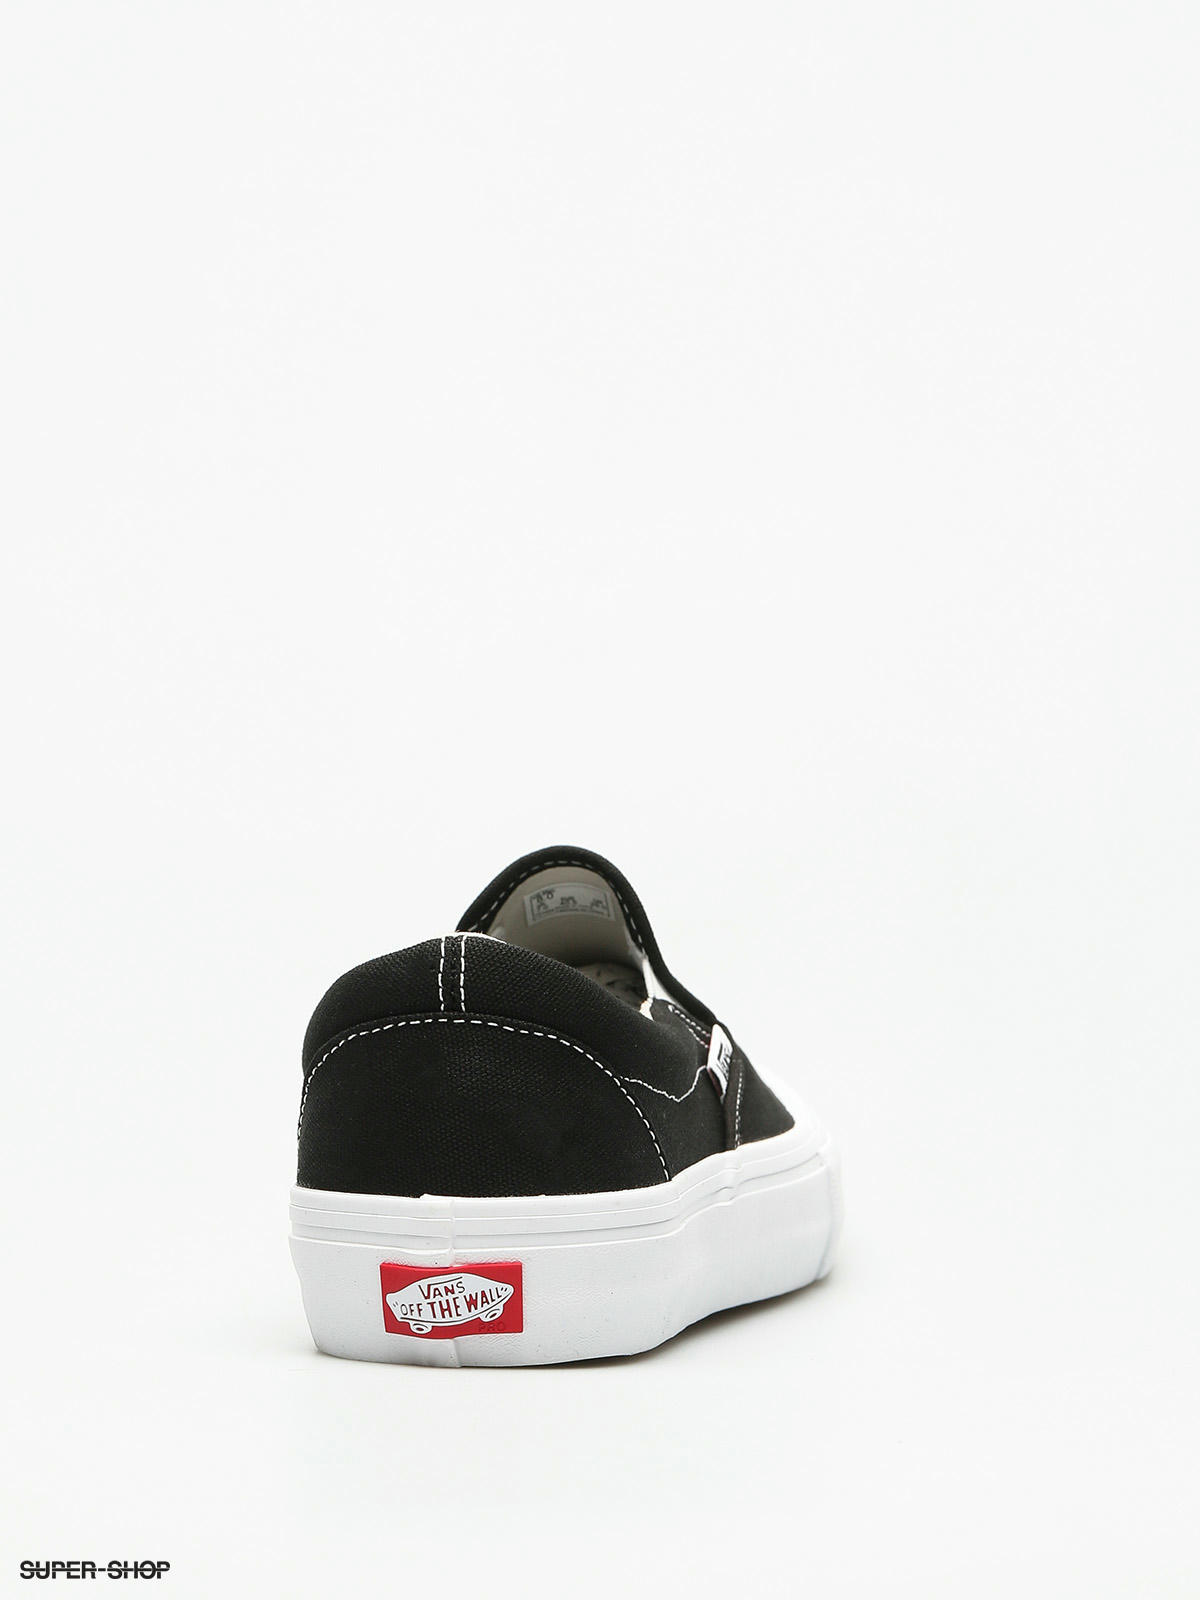 Shoes Slip Pro (toe cap/black/white)